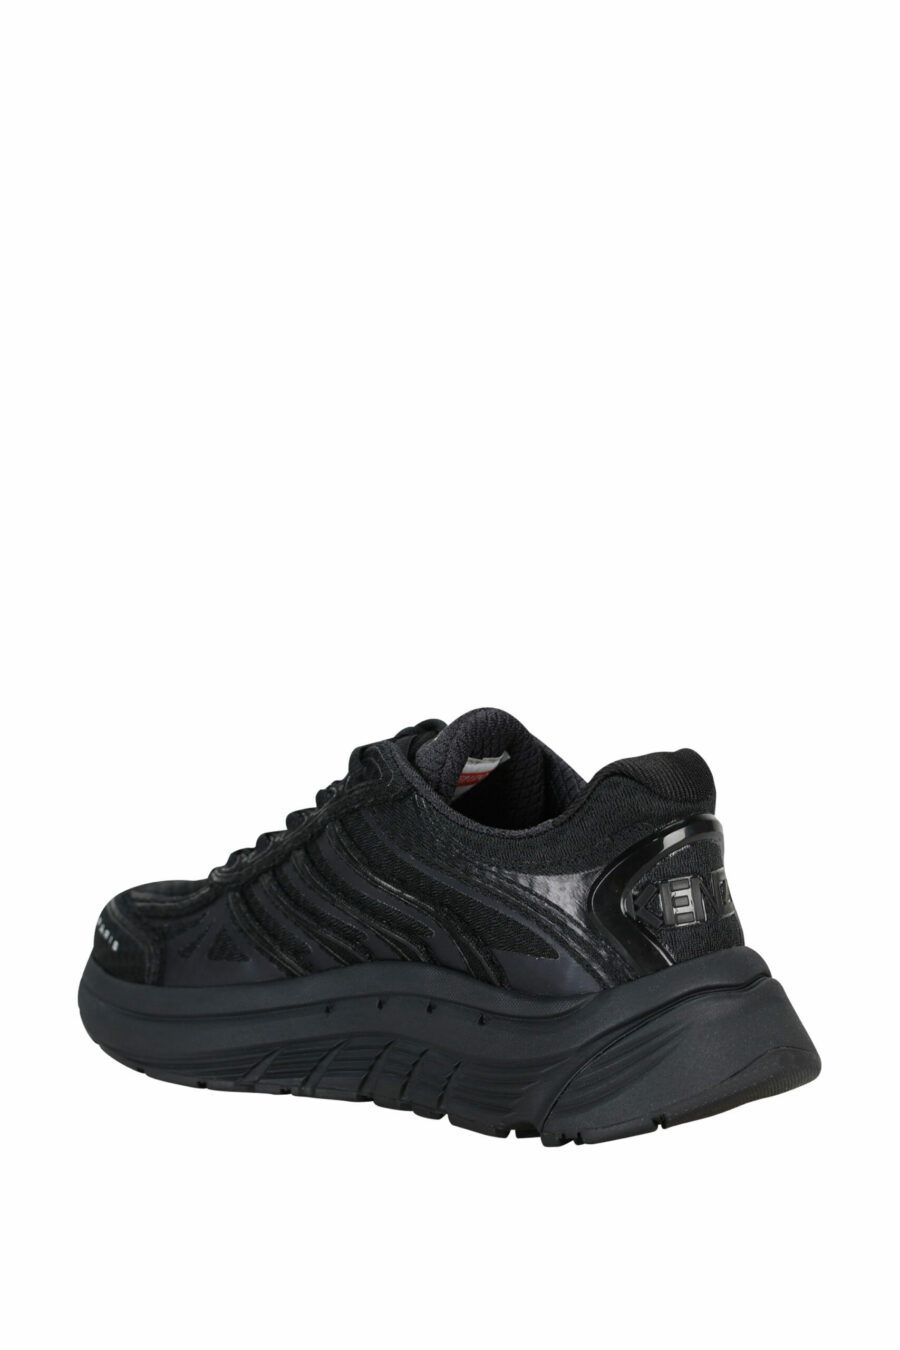 Zapatillas negras "kenzo tech runner" con minilogo blanco - 3612230549722 3 scaled